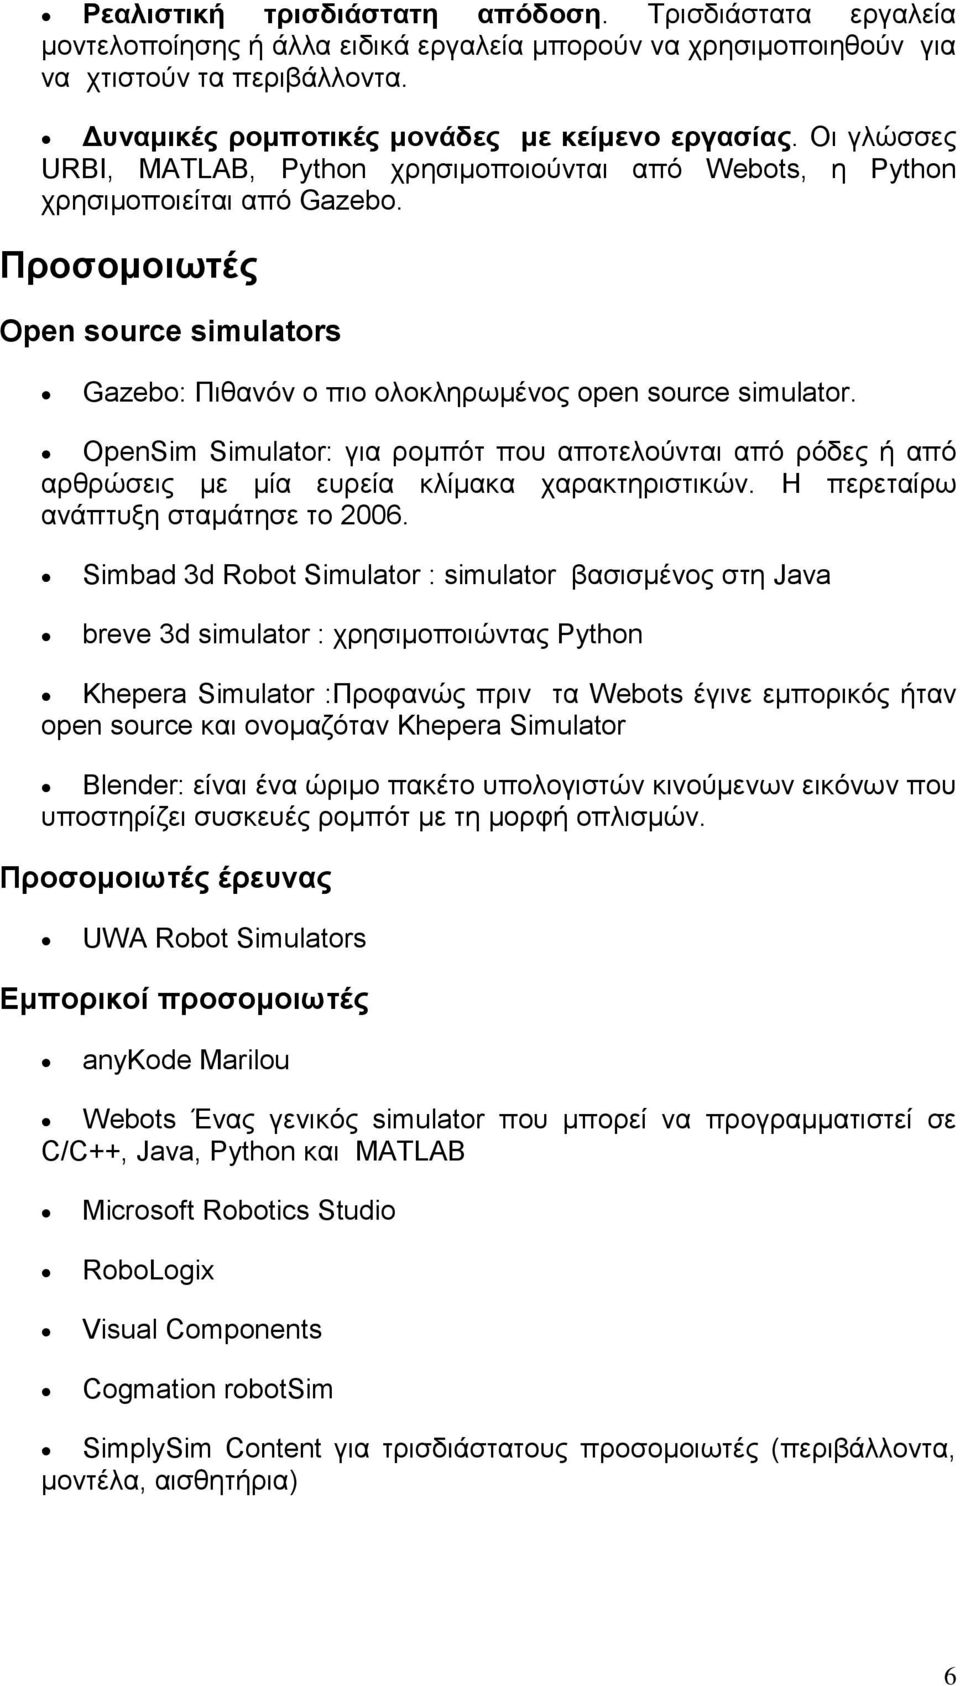 Προσοµοιωτές Open source simulators Gazebo: Πιθανόν ο πιο ολοκληρωµένος open source simulator.